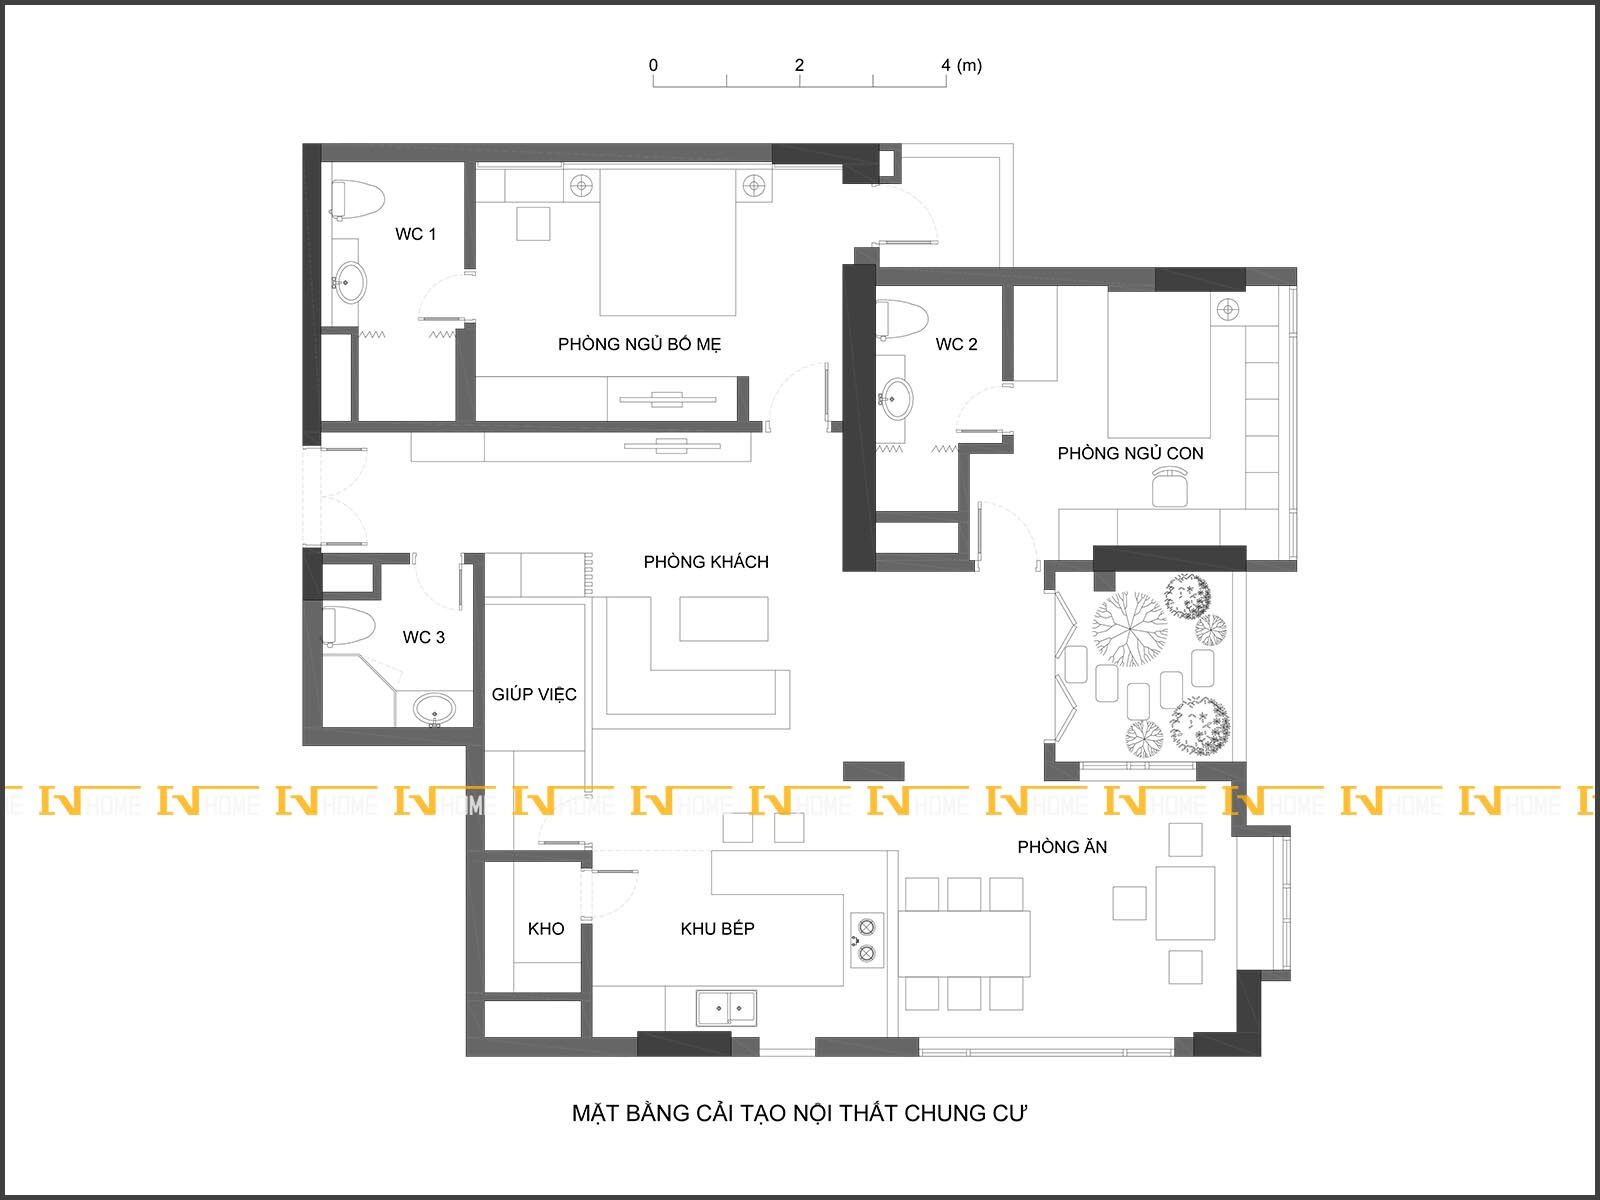 200426, mặt bằng cải tạo nội thất căn hộ 150 m2.